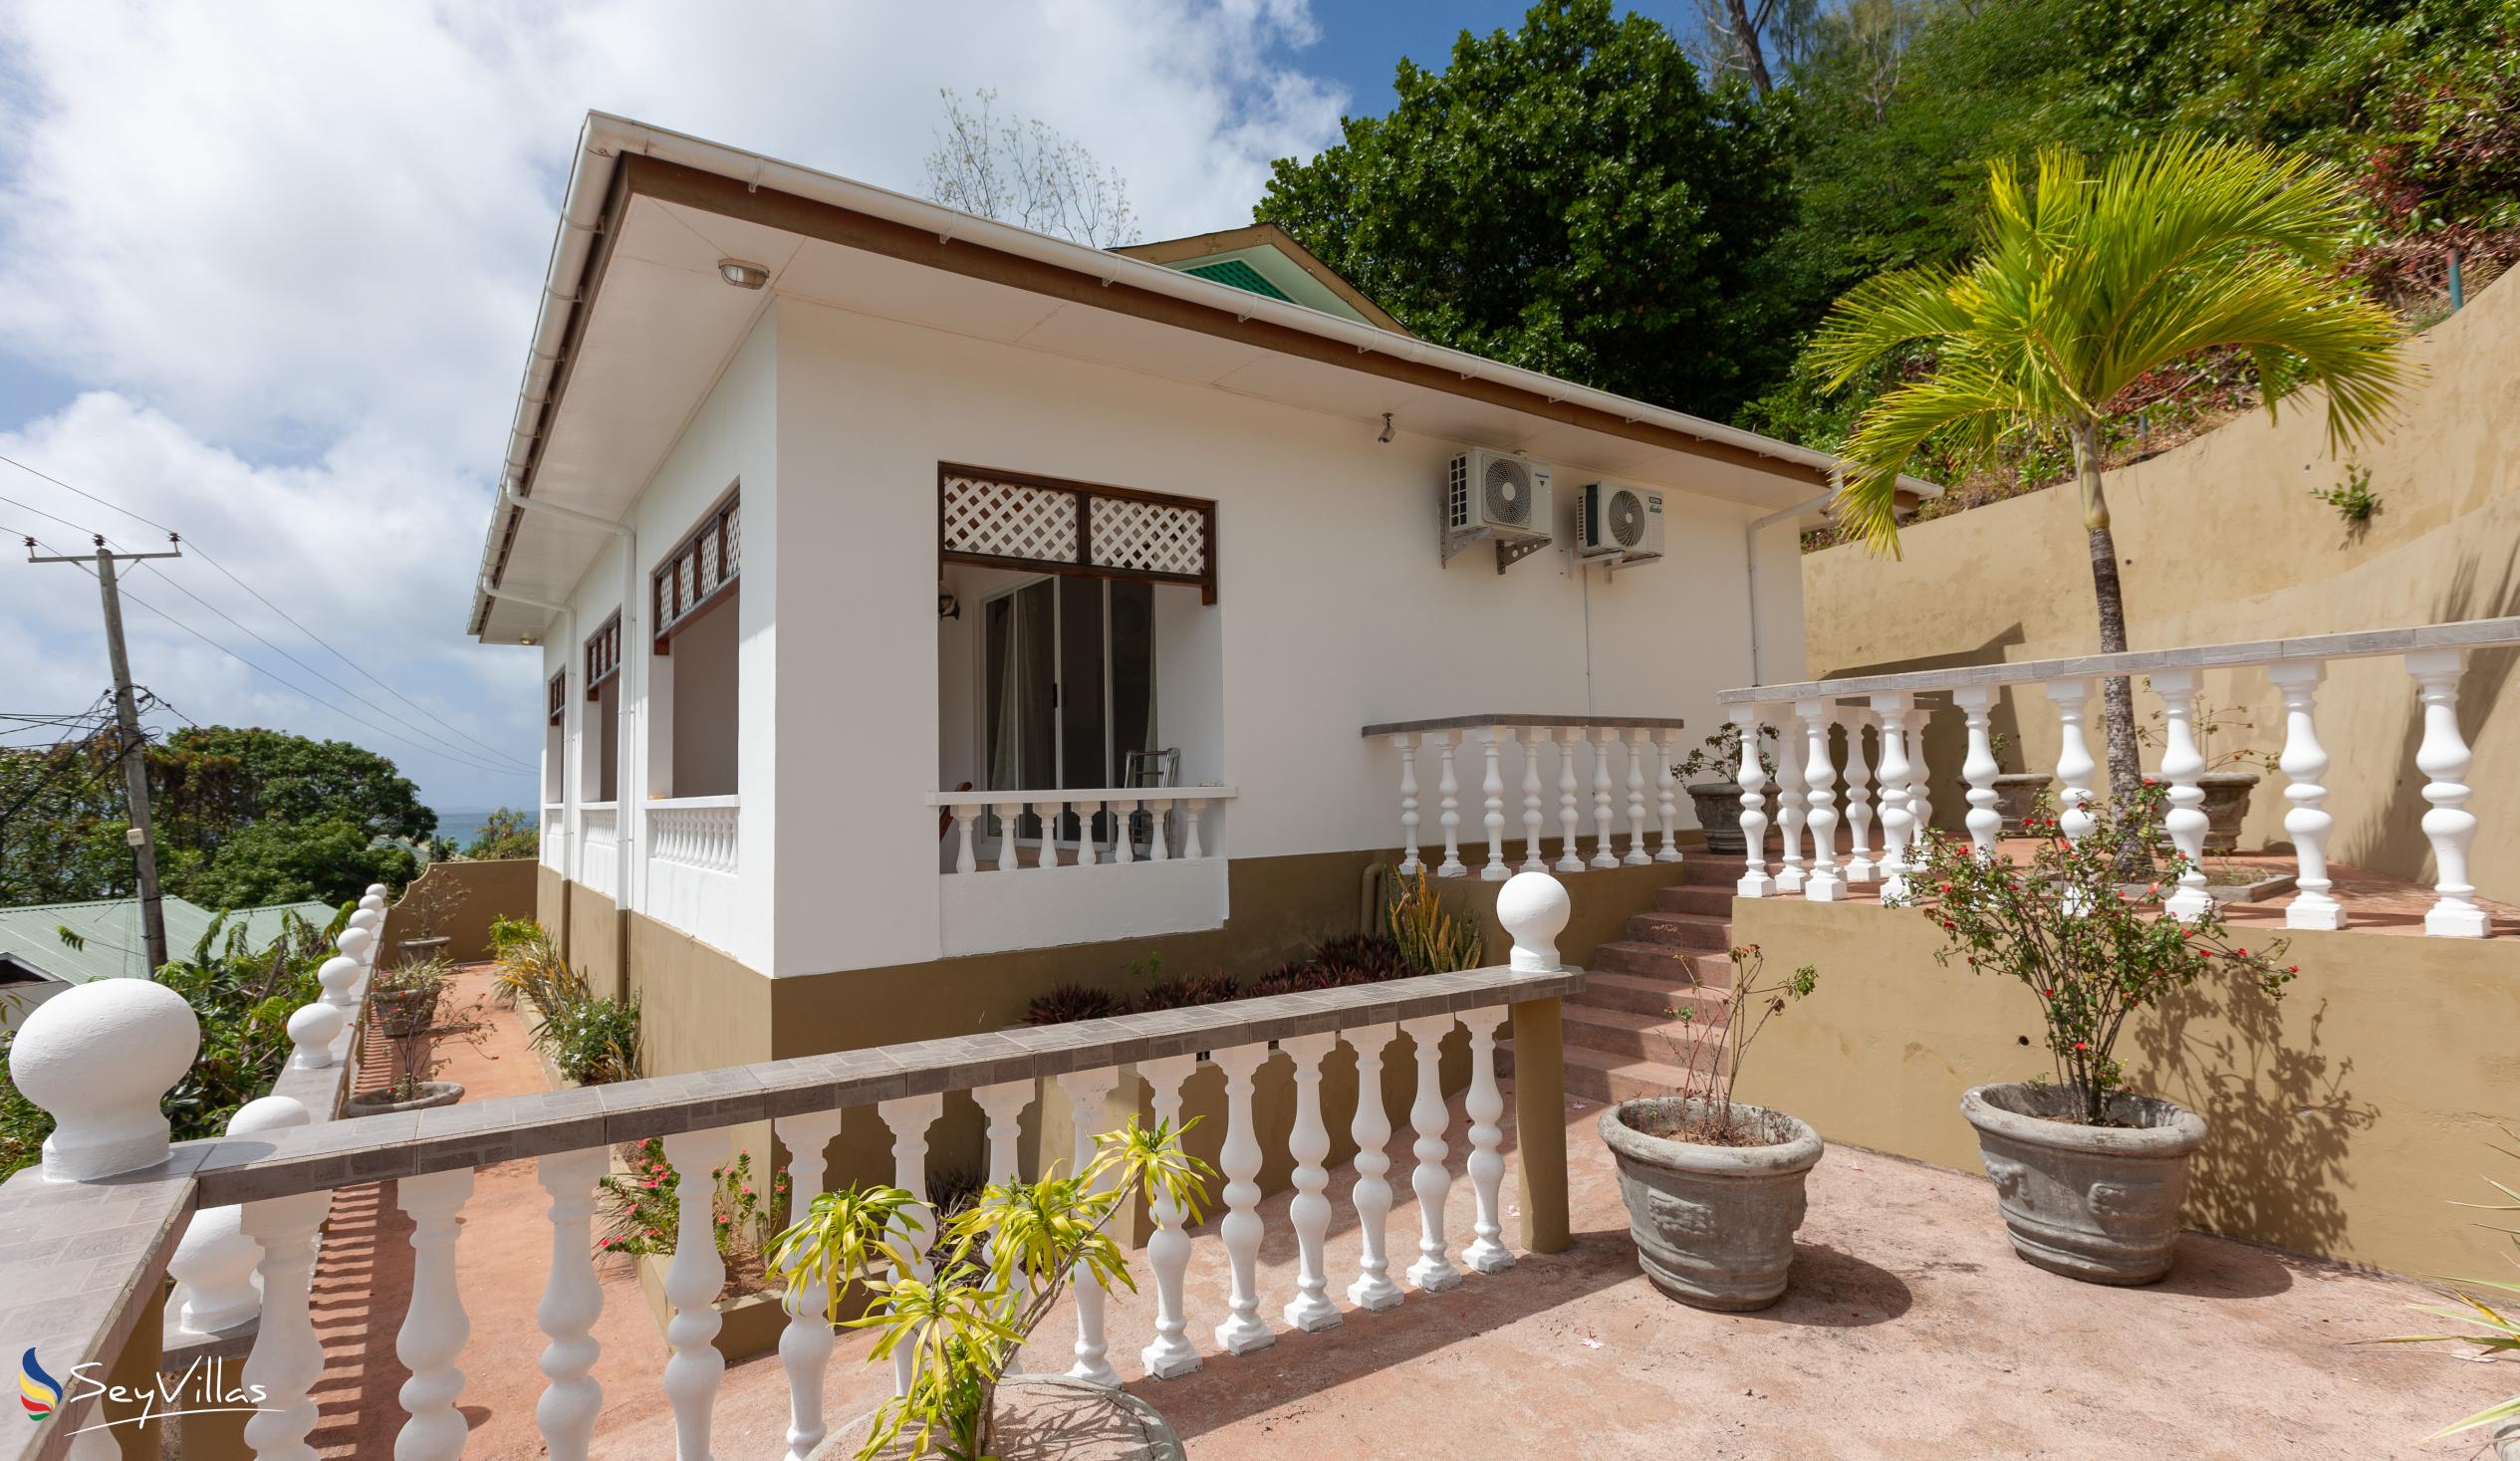 Foto 8: Villa Anse La Blague - Aussenbereich - Praslin (Seychellen)